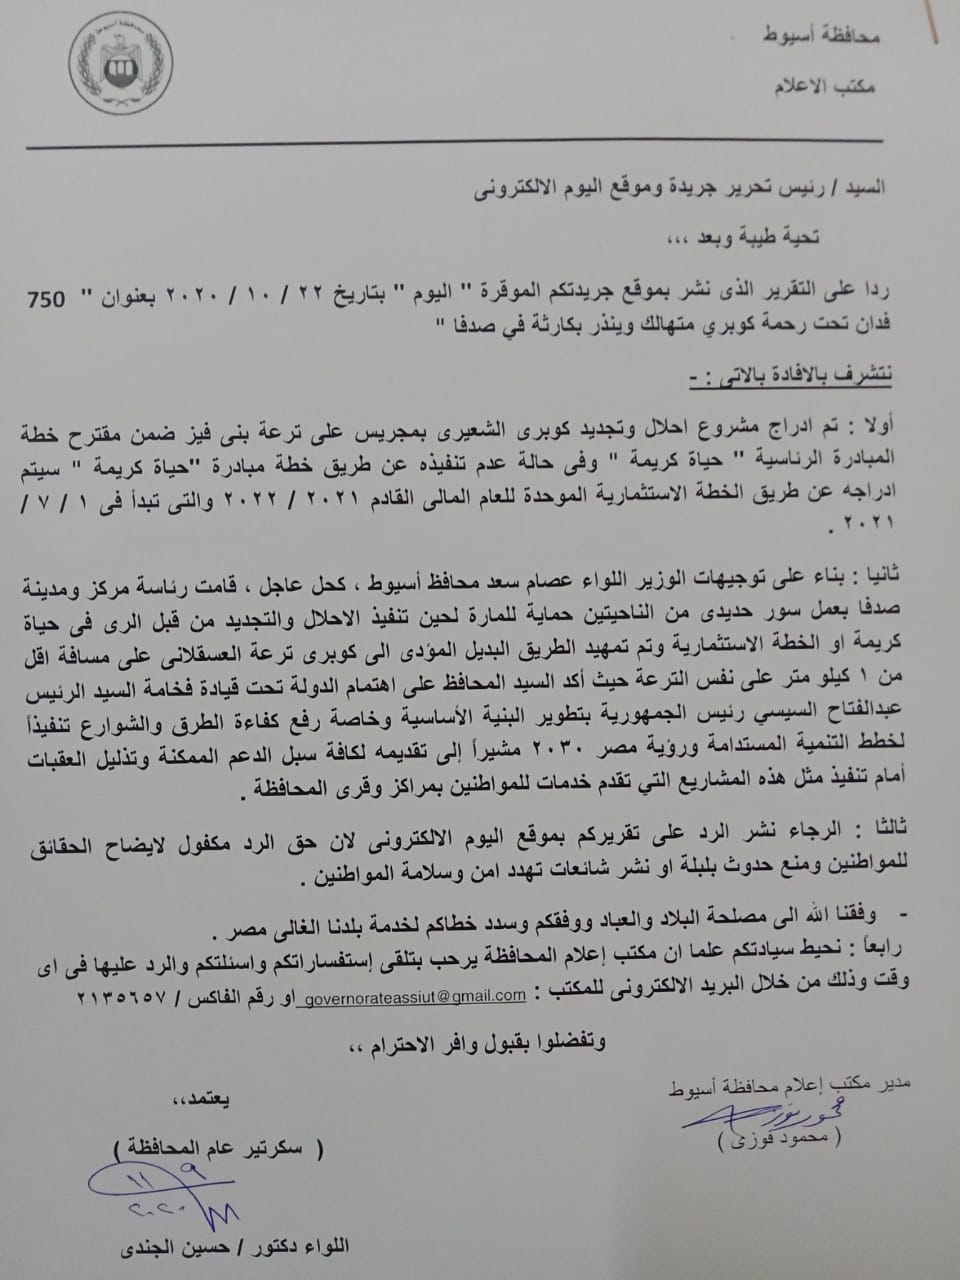 نص إخطار المركز الإعلامي بمحافظة أسيوط لجريدة "اليوم" 